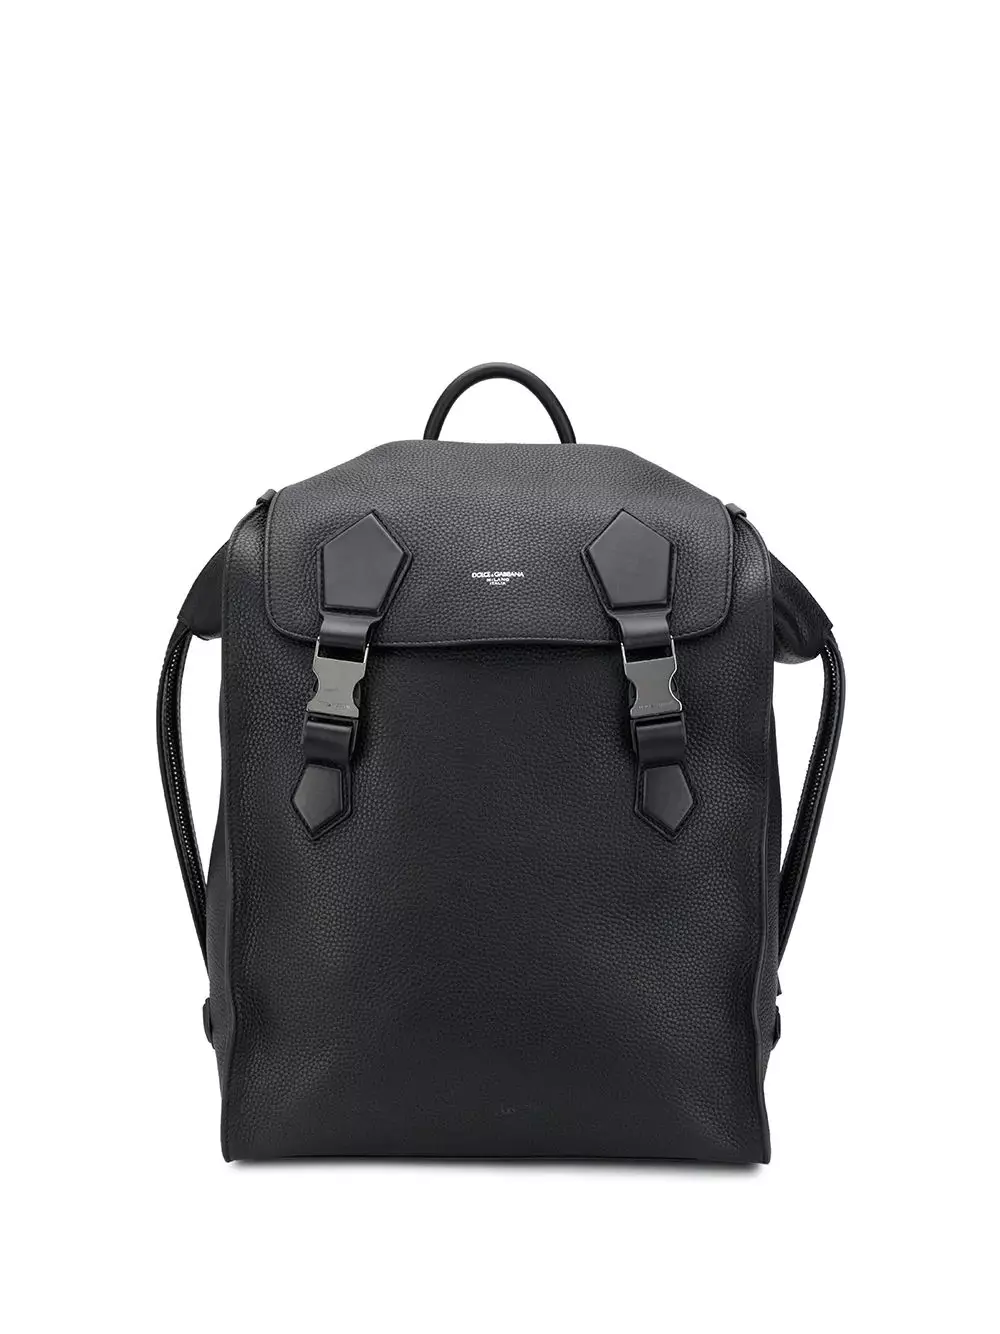 DOLCE & Gabbana Backpacks: ເພດຍິງແລະຜູ້ຊາຍ, ສີດໍາແລະສີແດງແລະສີແດງ, ກະເປົາເປ້ແລະແບບອື່ນໆ. ວິທີການຈໍາແນກຕົ້ນສະບັບຈາກສໍາເນົາ? 2559_29